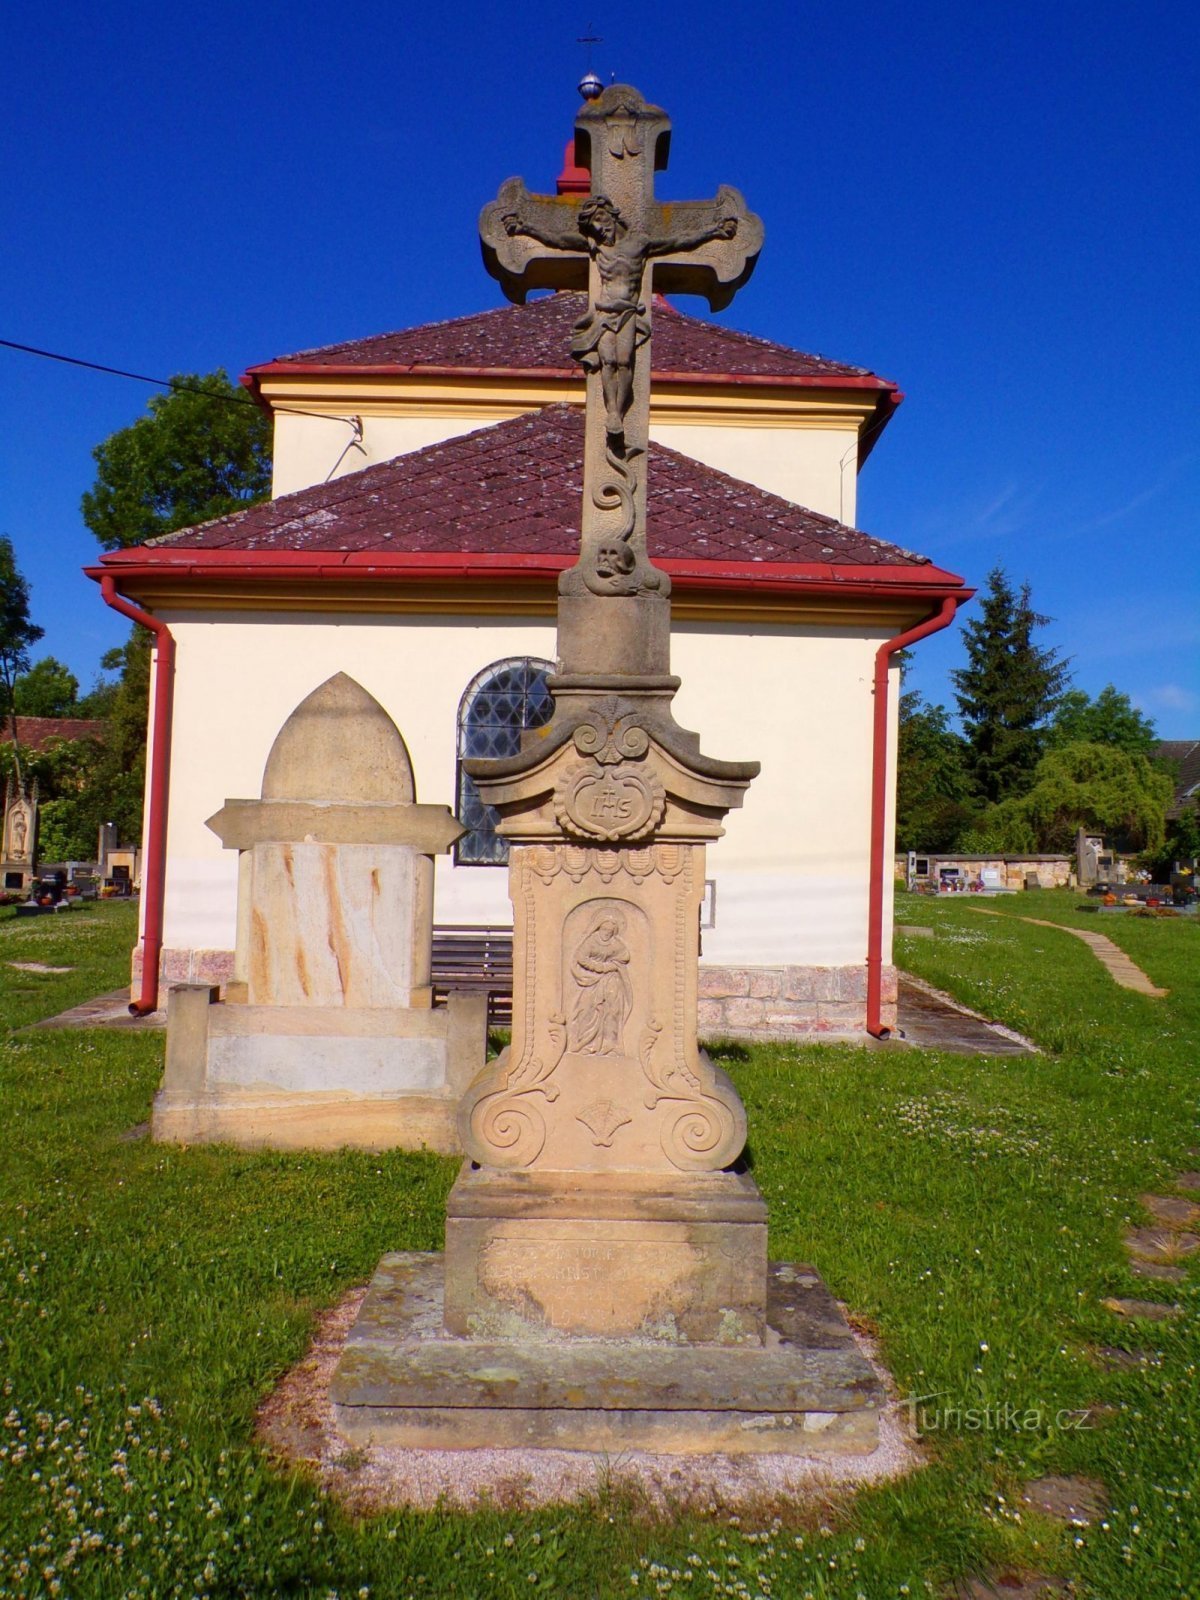 十字架在圣。 尼古拉斯，主教（乔特奇，31.5.2022 年 XNUMX 月 XNUMX 日）